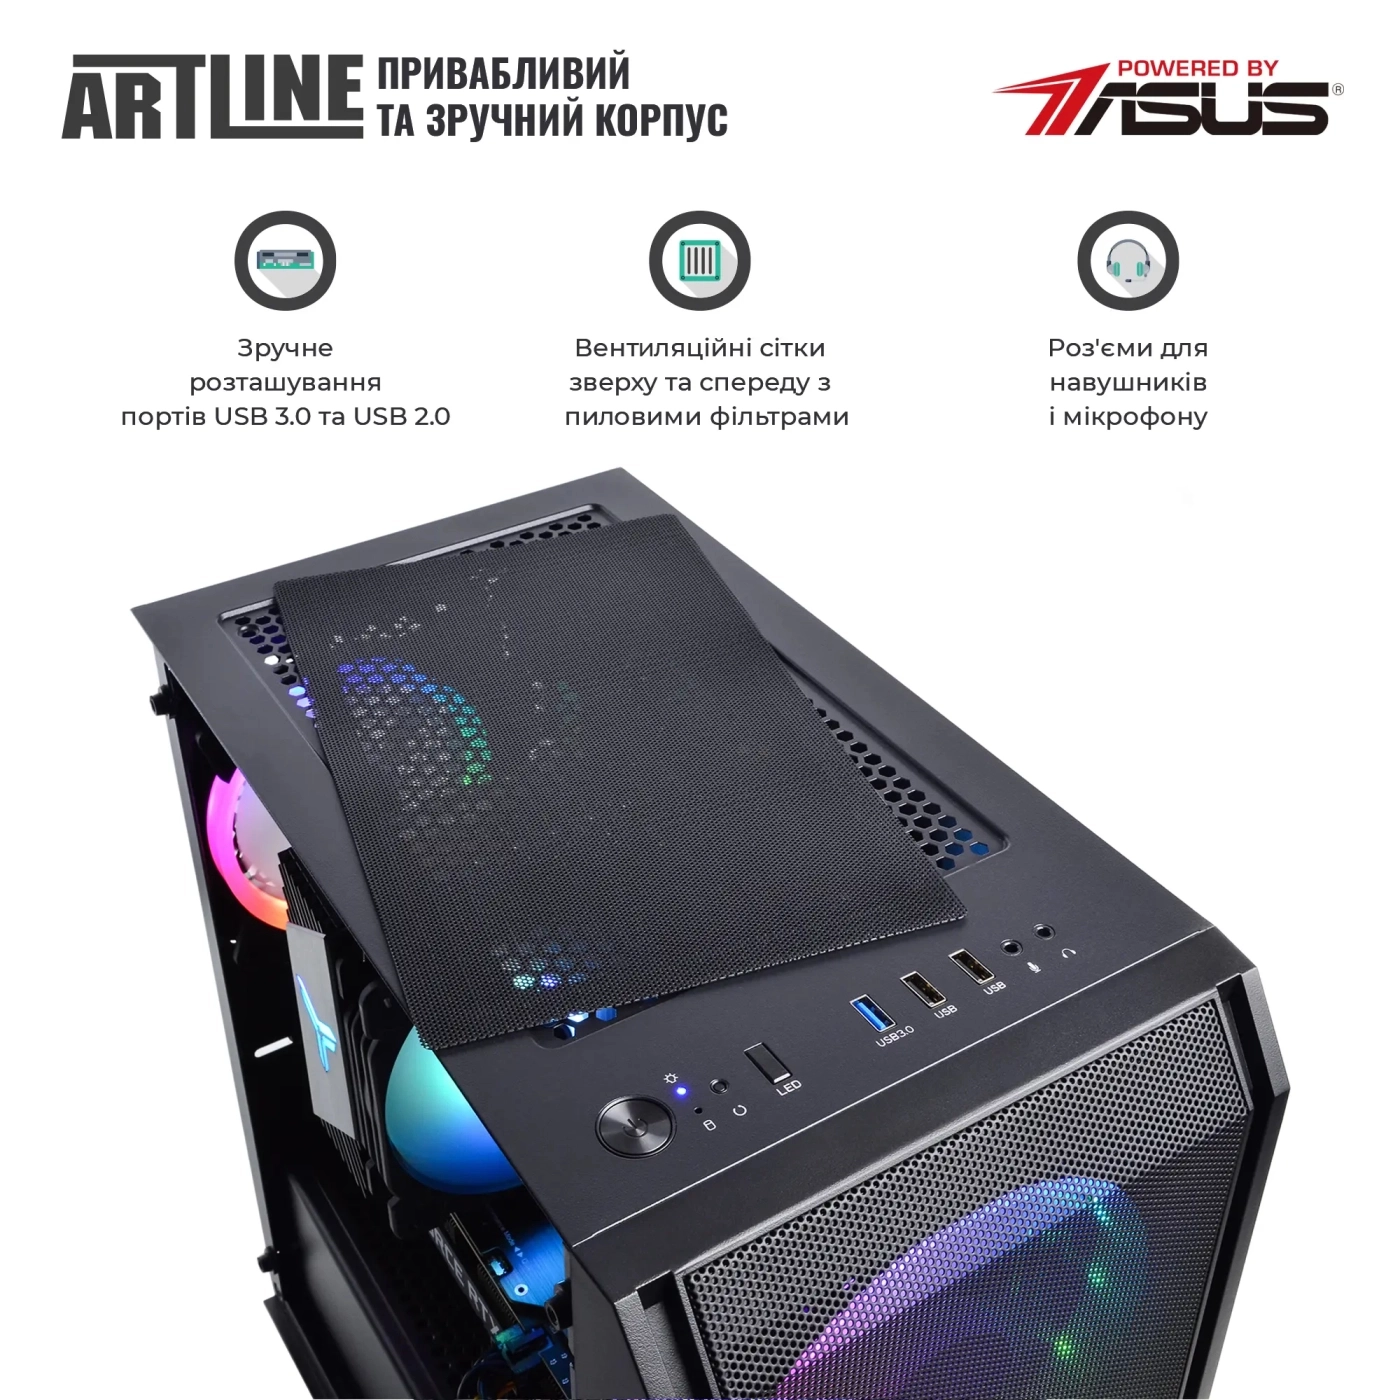 Купить Компьютер ARTLINE Gaming X67v31 - фото 6